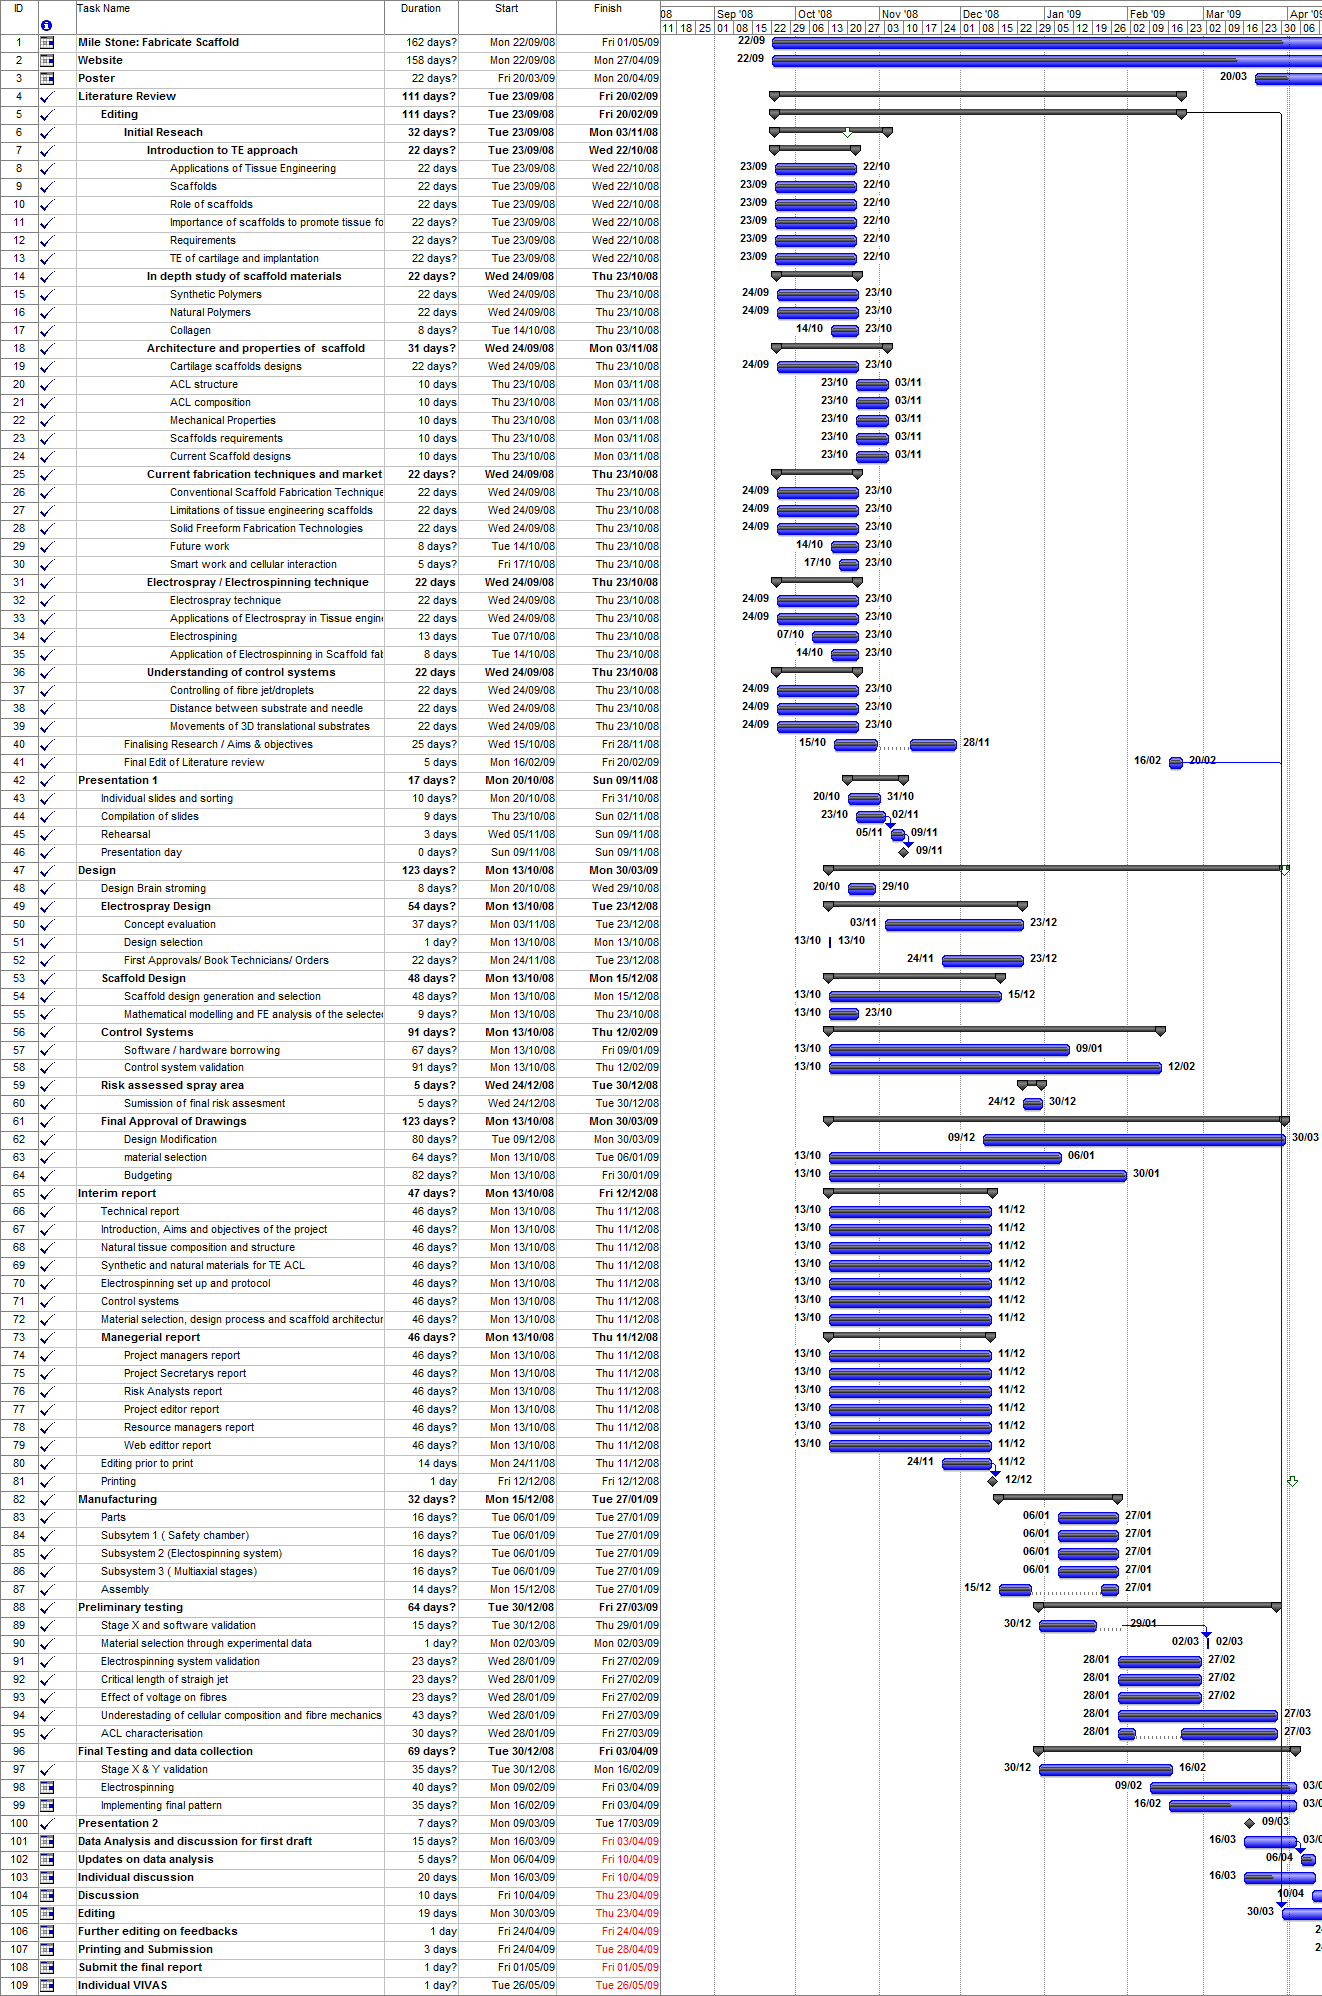 Gantt Chart Analysis